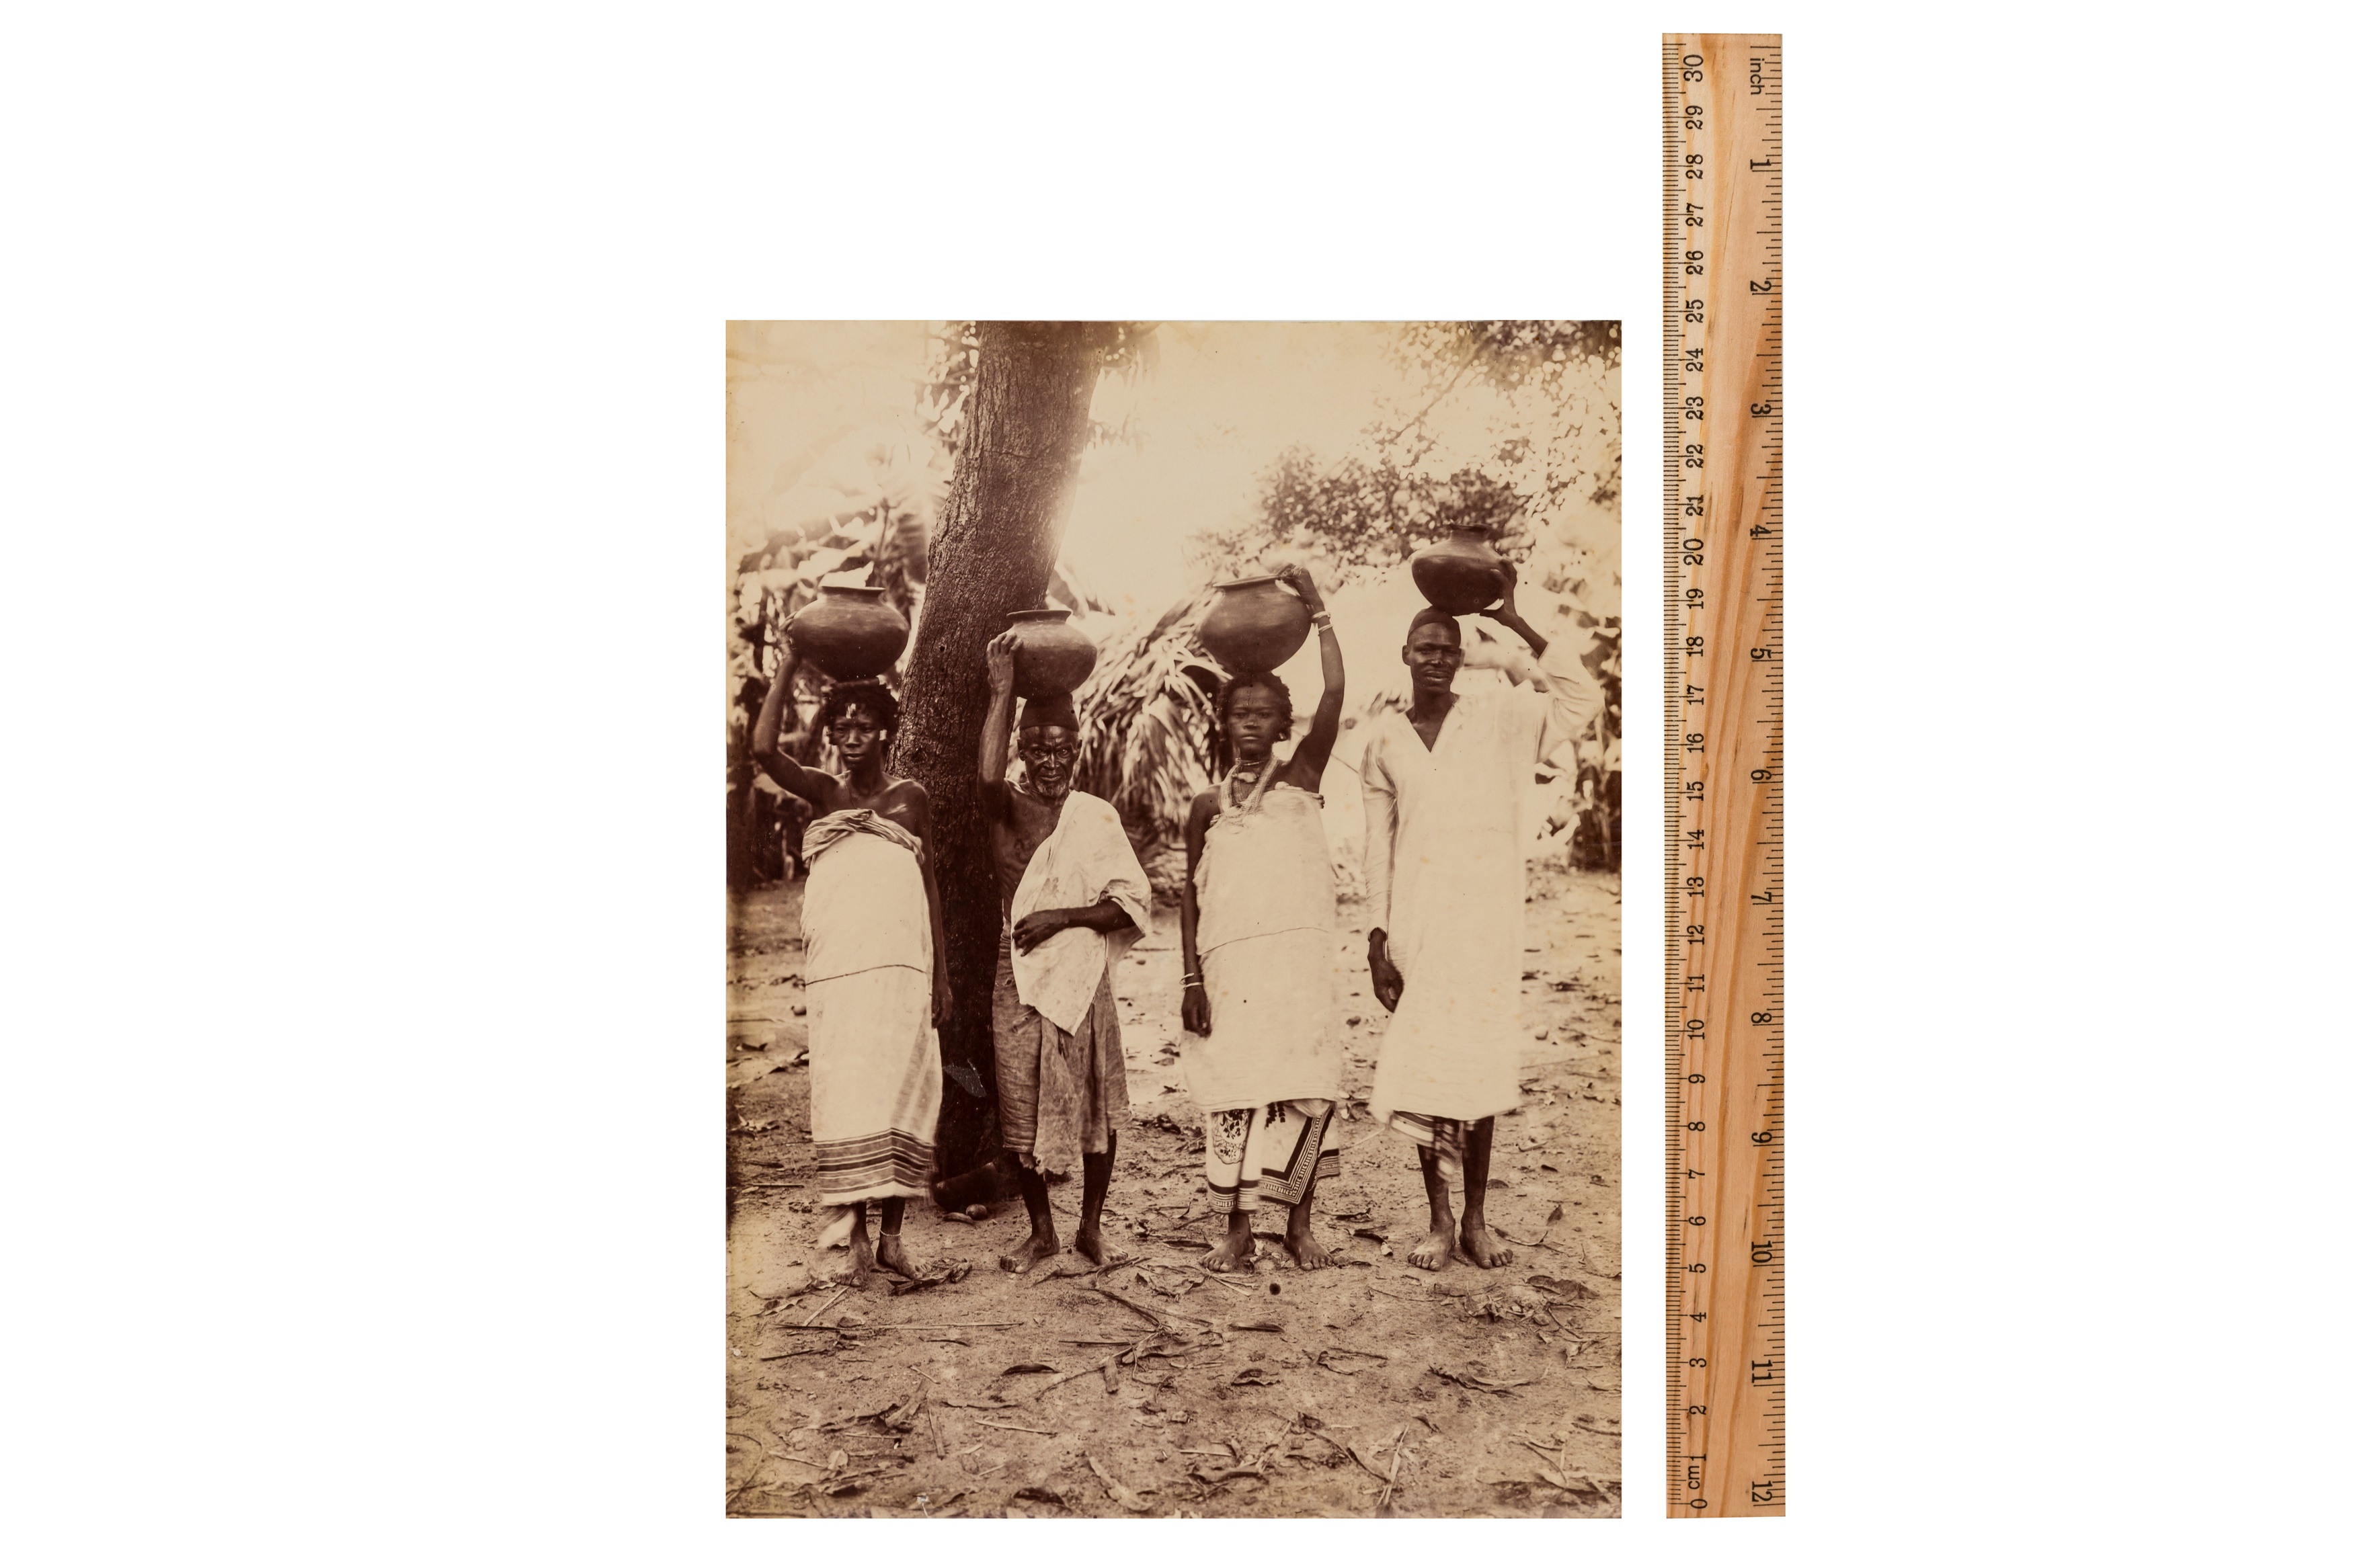 MADAGASCAR, c.1890 - Image 3 of 3